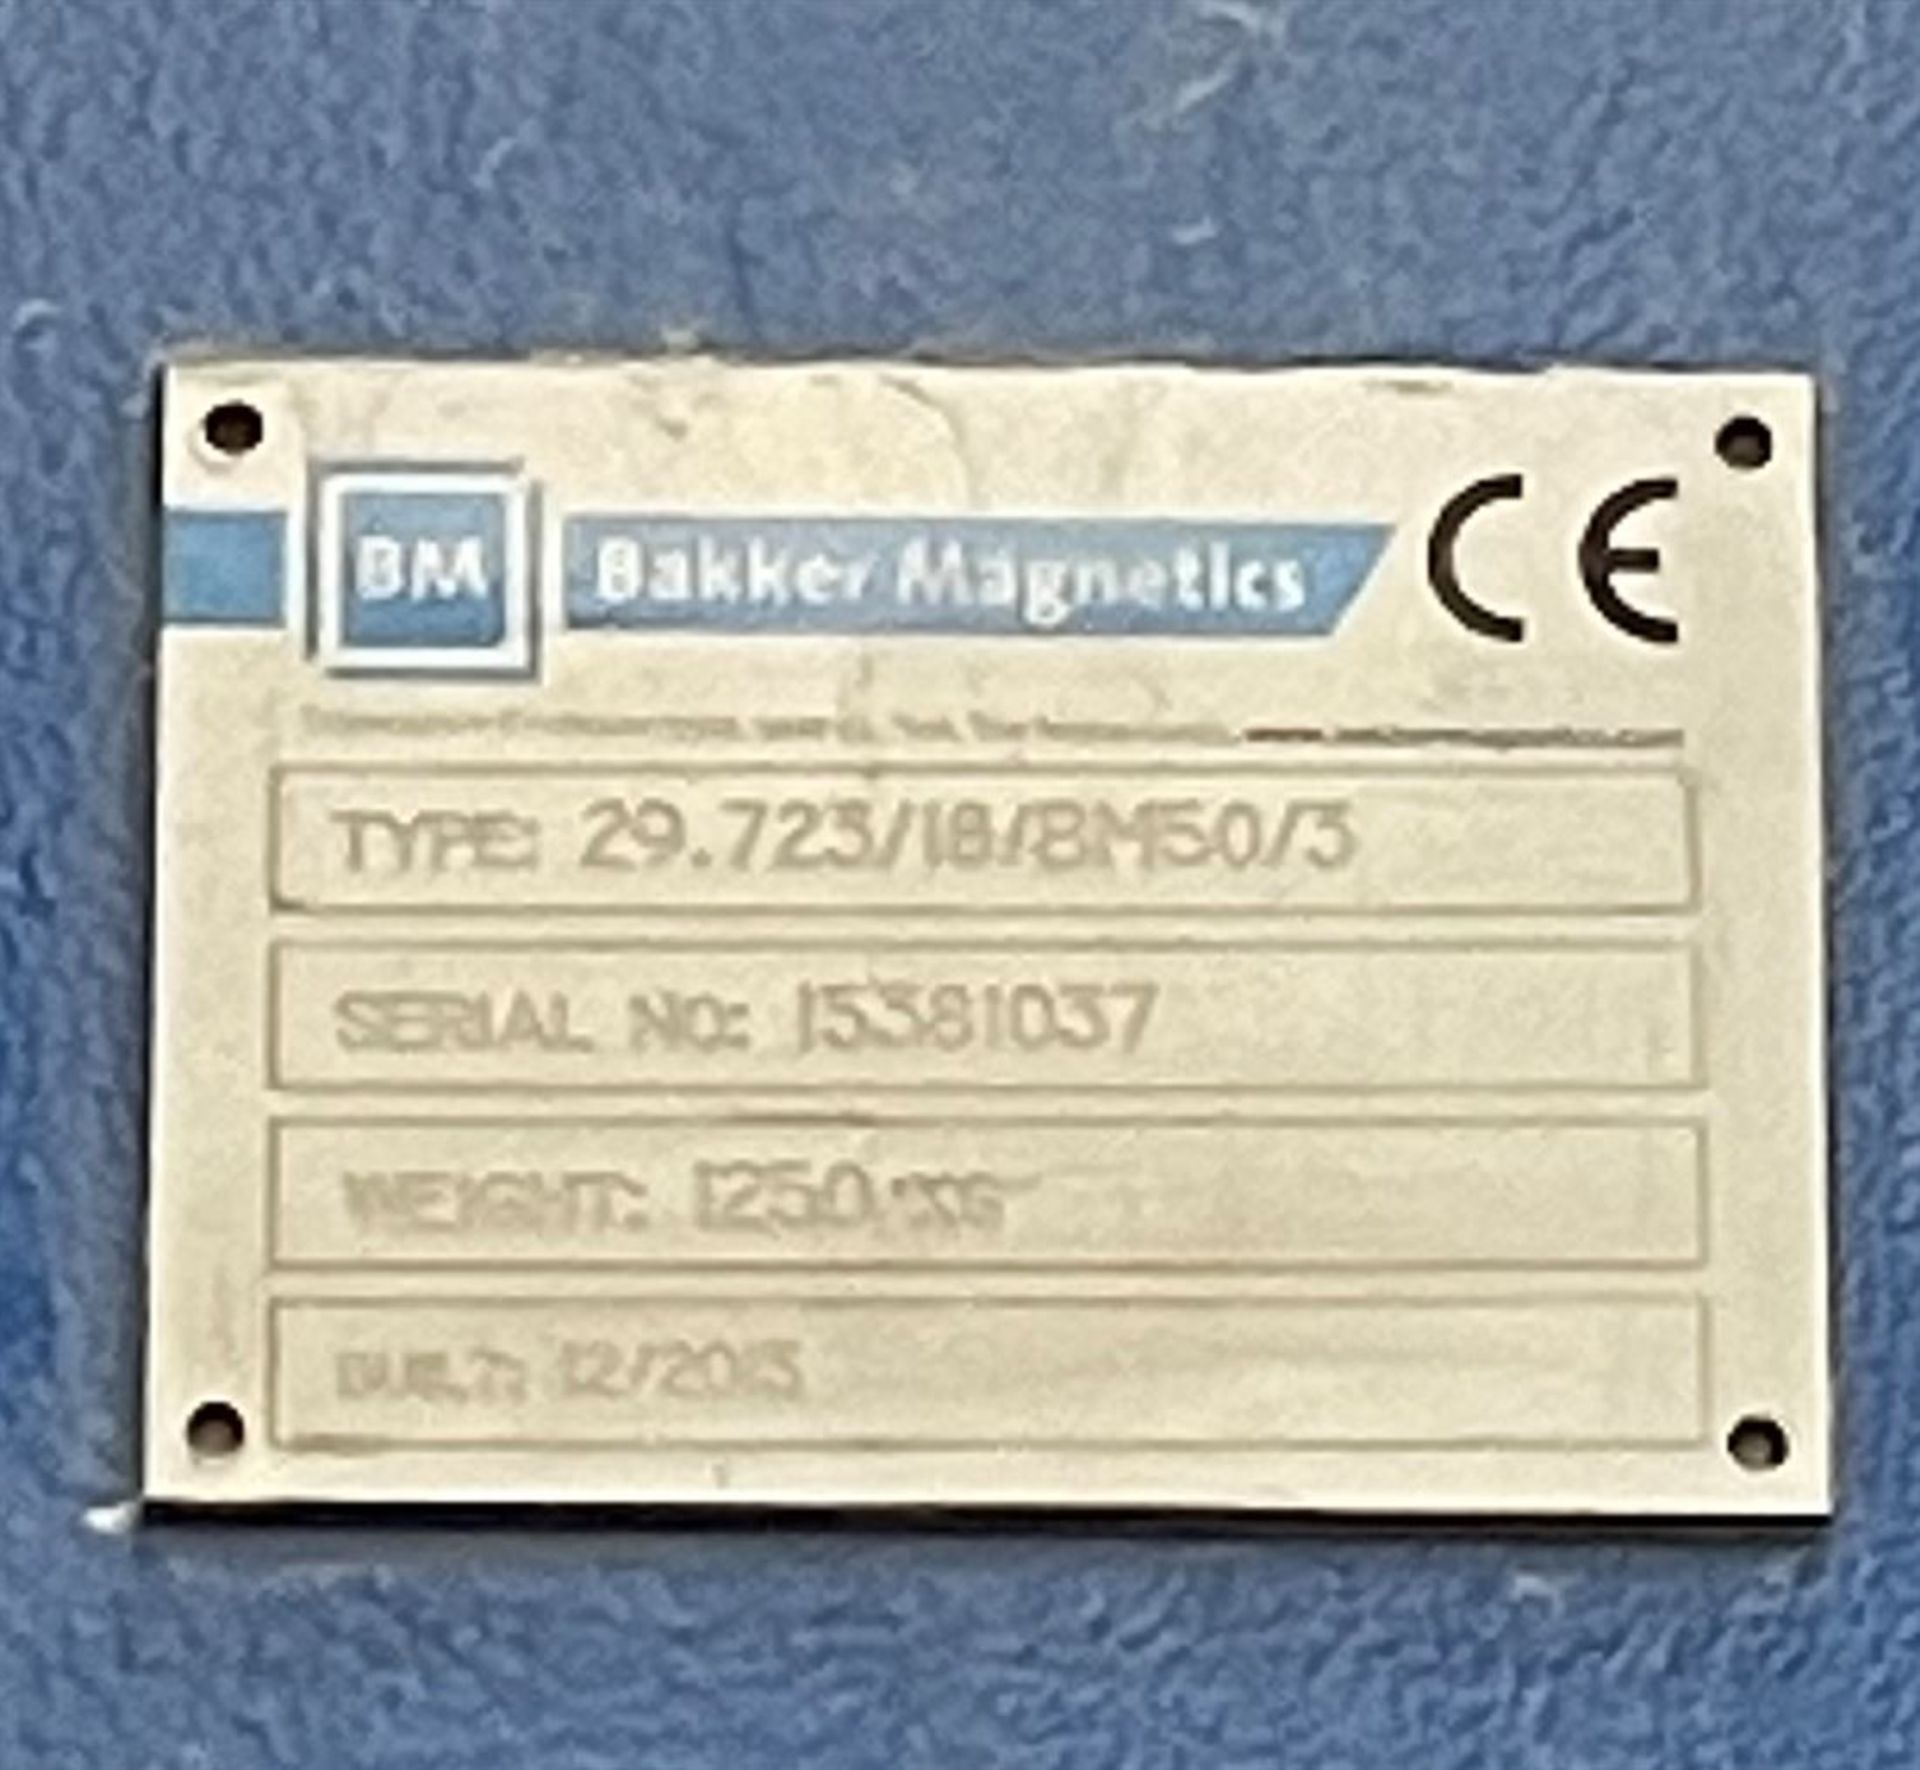 2013 BAKKER MAGNETICS 29.723/18/BM50/3 Non-Ferrous Magnet Separator, s/n 15381037, Approx. 30"W x - Image 6 of 6